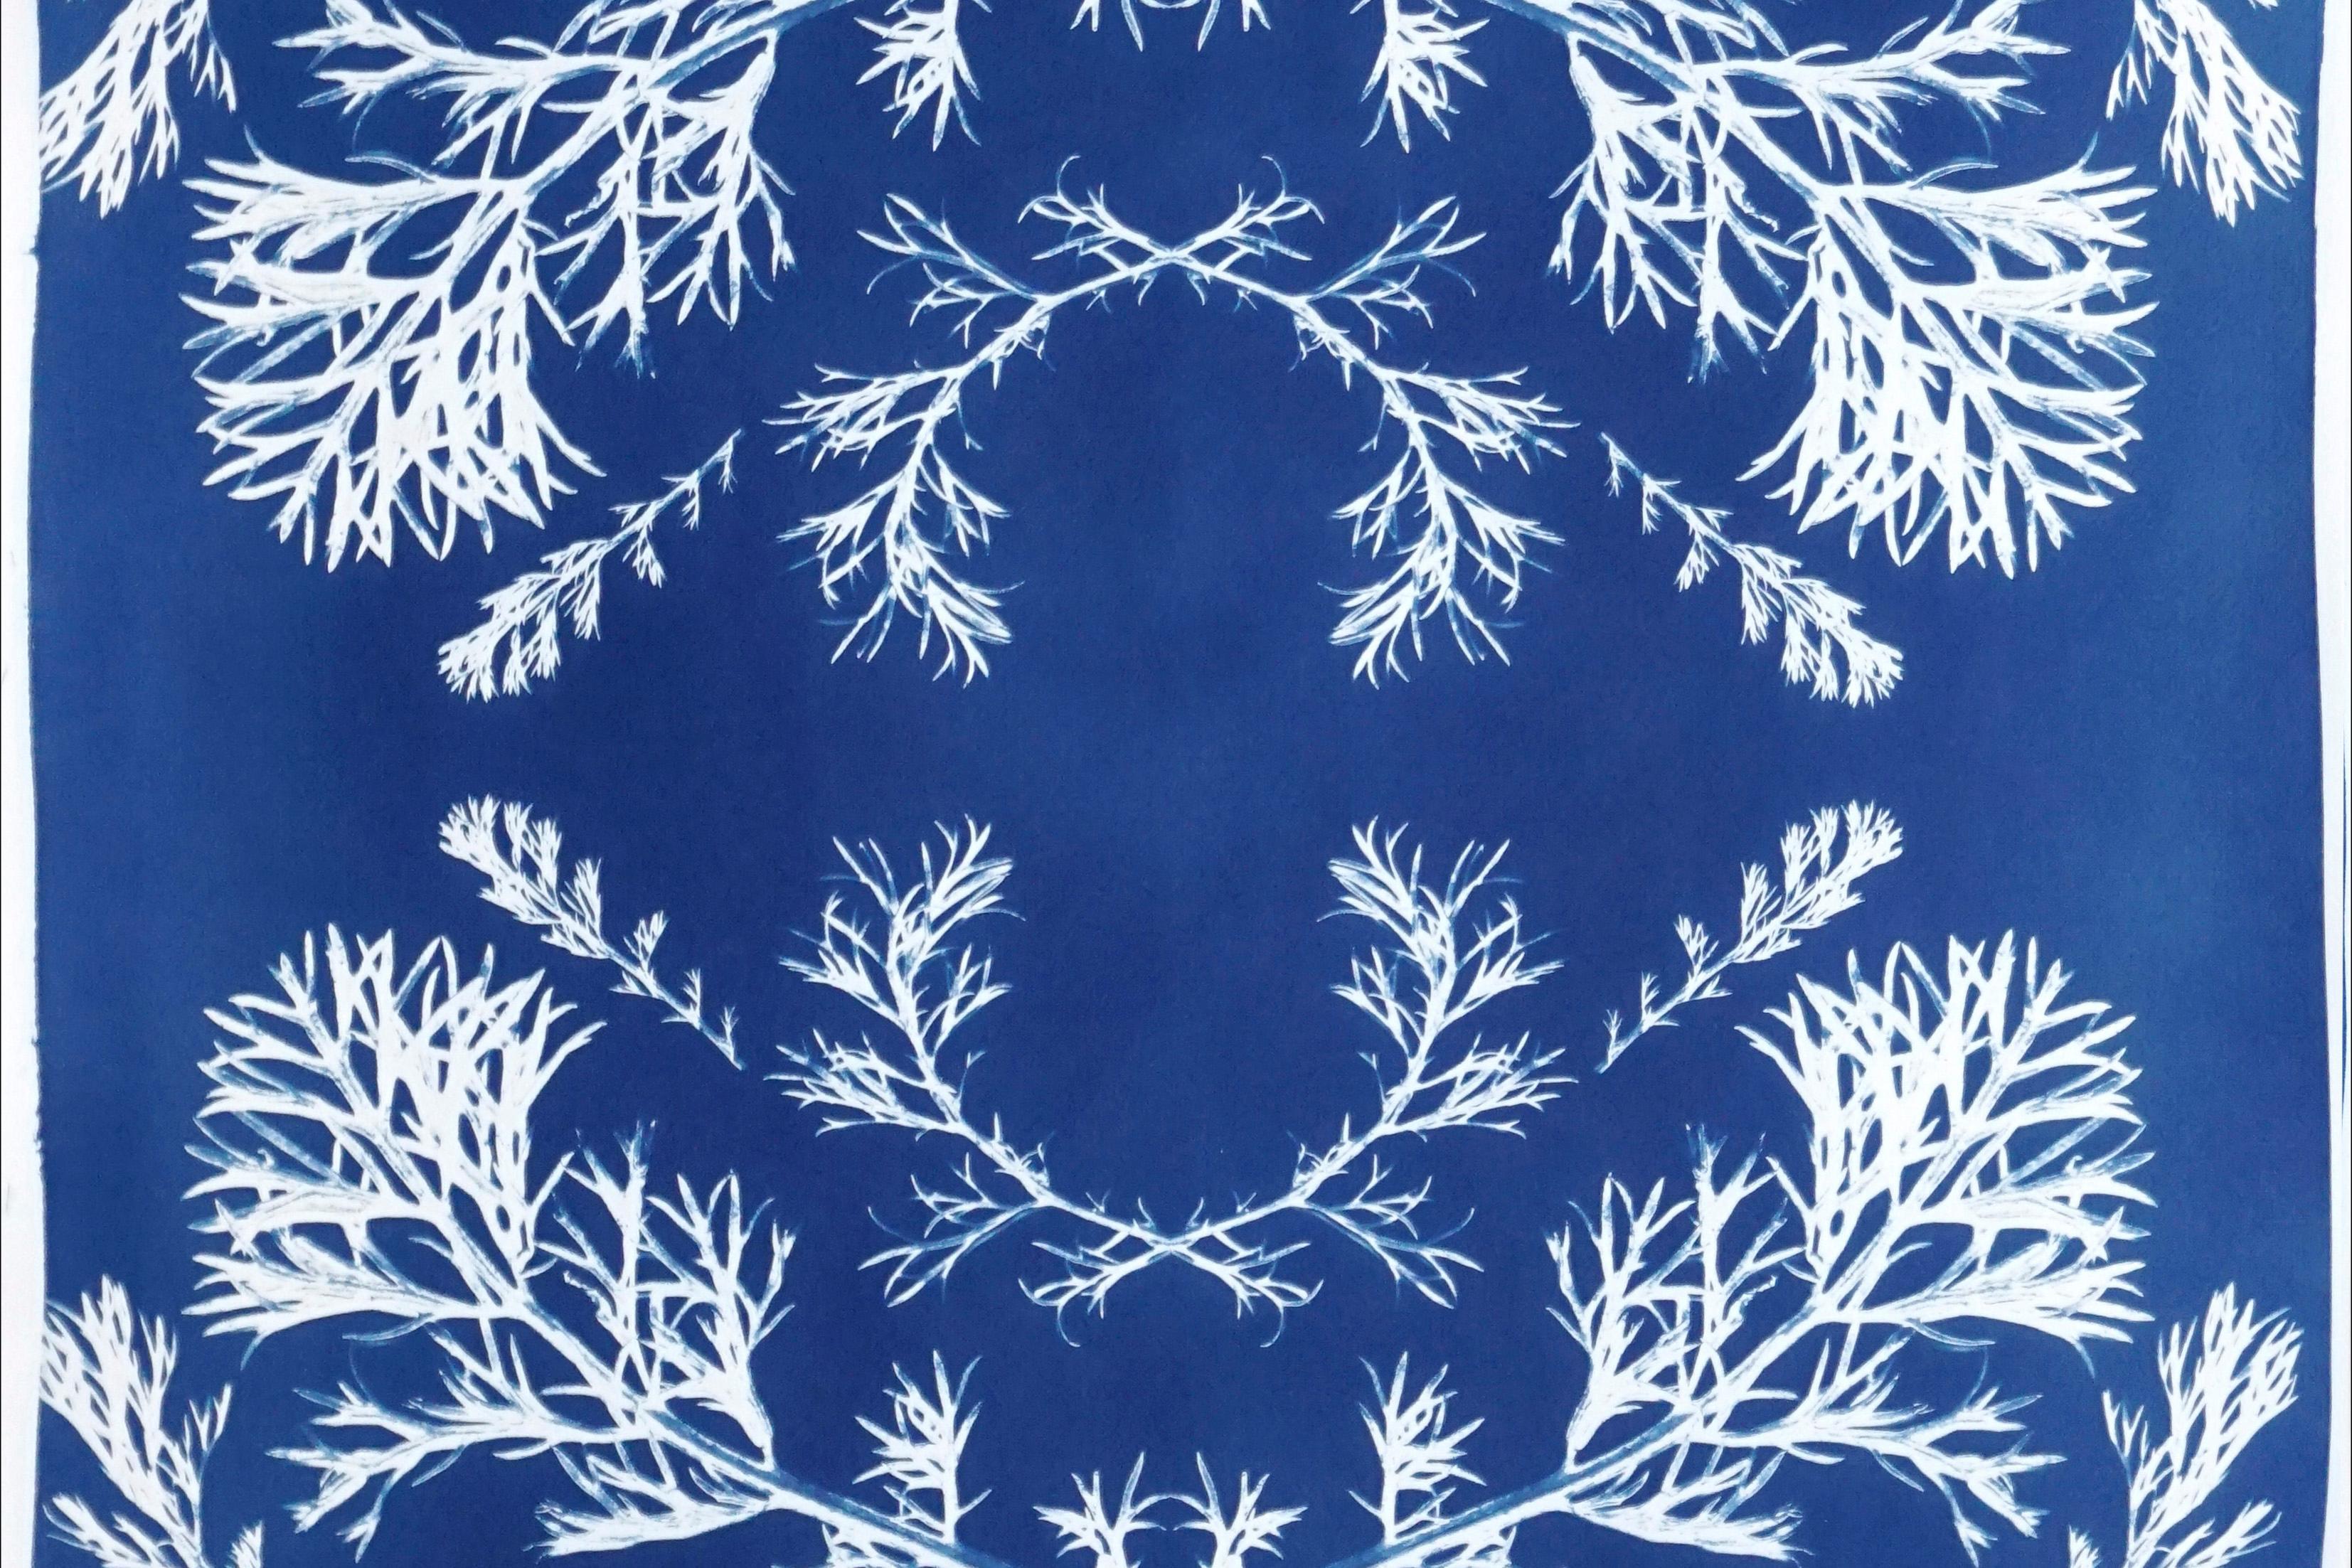 Gepresste Blumen in Blau, botanische Zyanotypie auf Papier, nordischer Stil  (Barock), Print, von Kind of Cyan